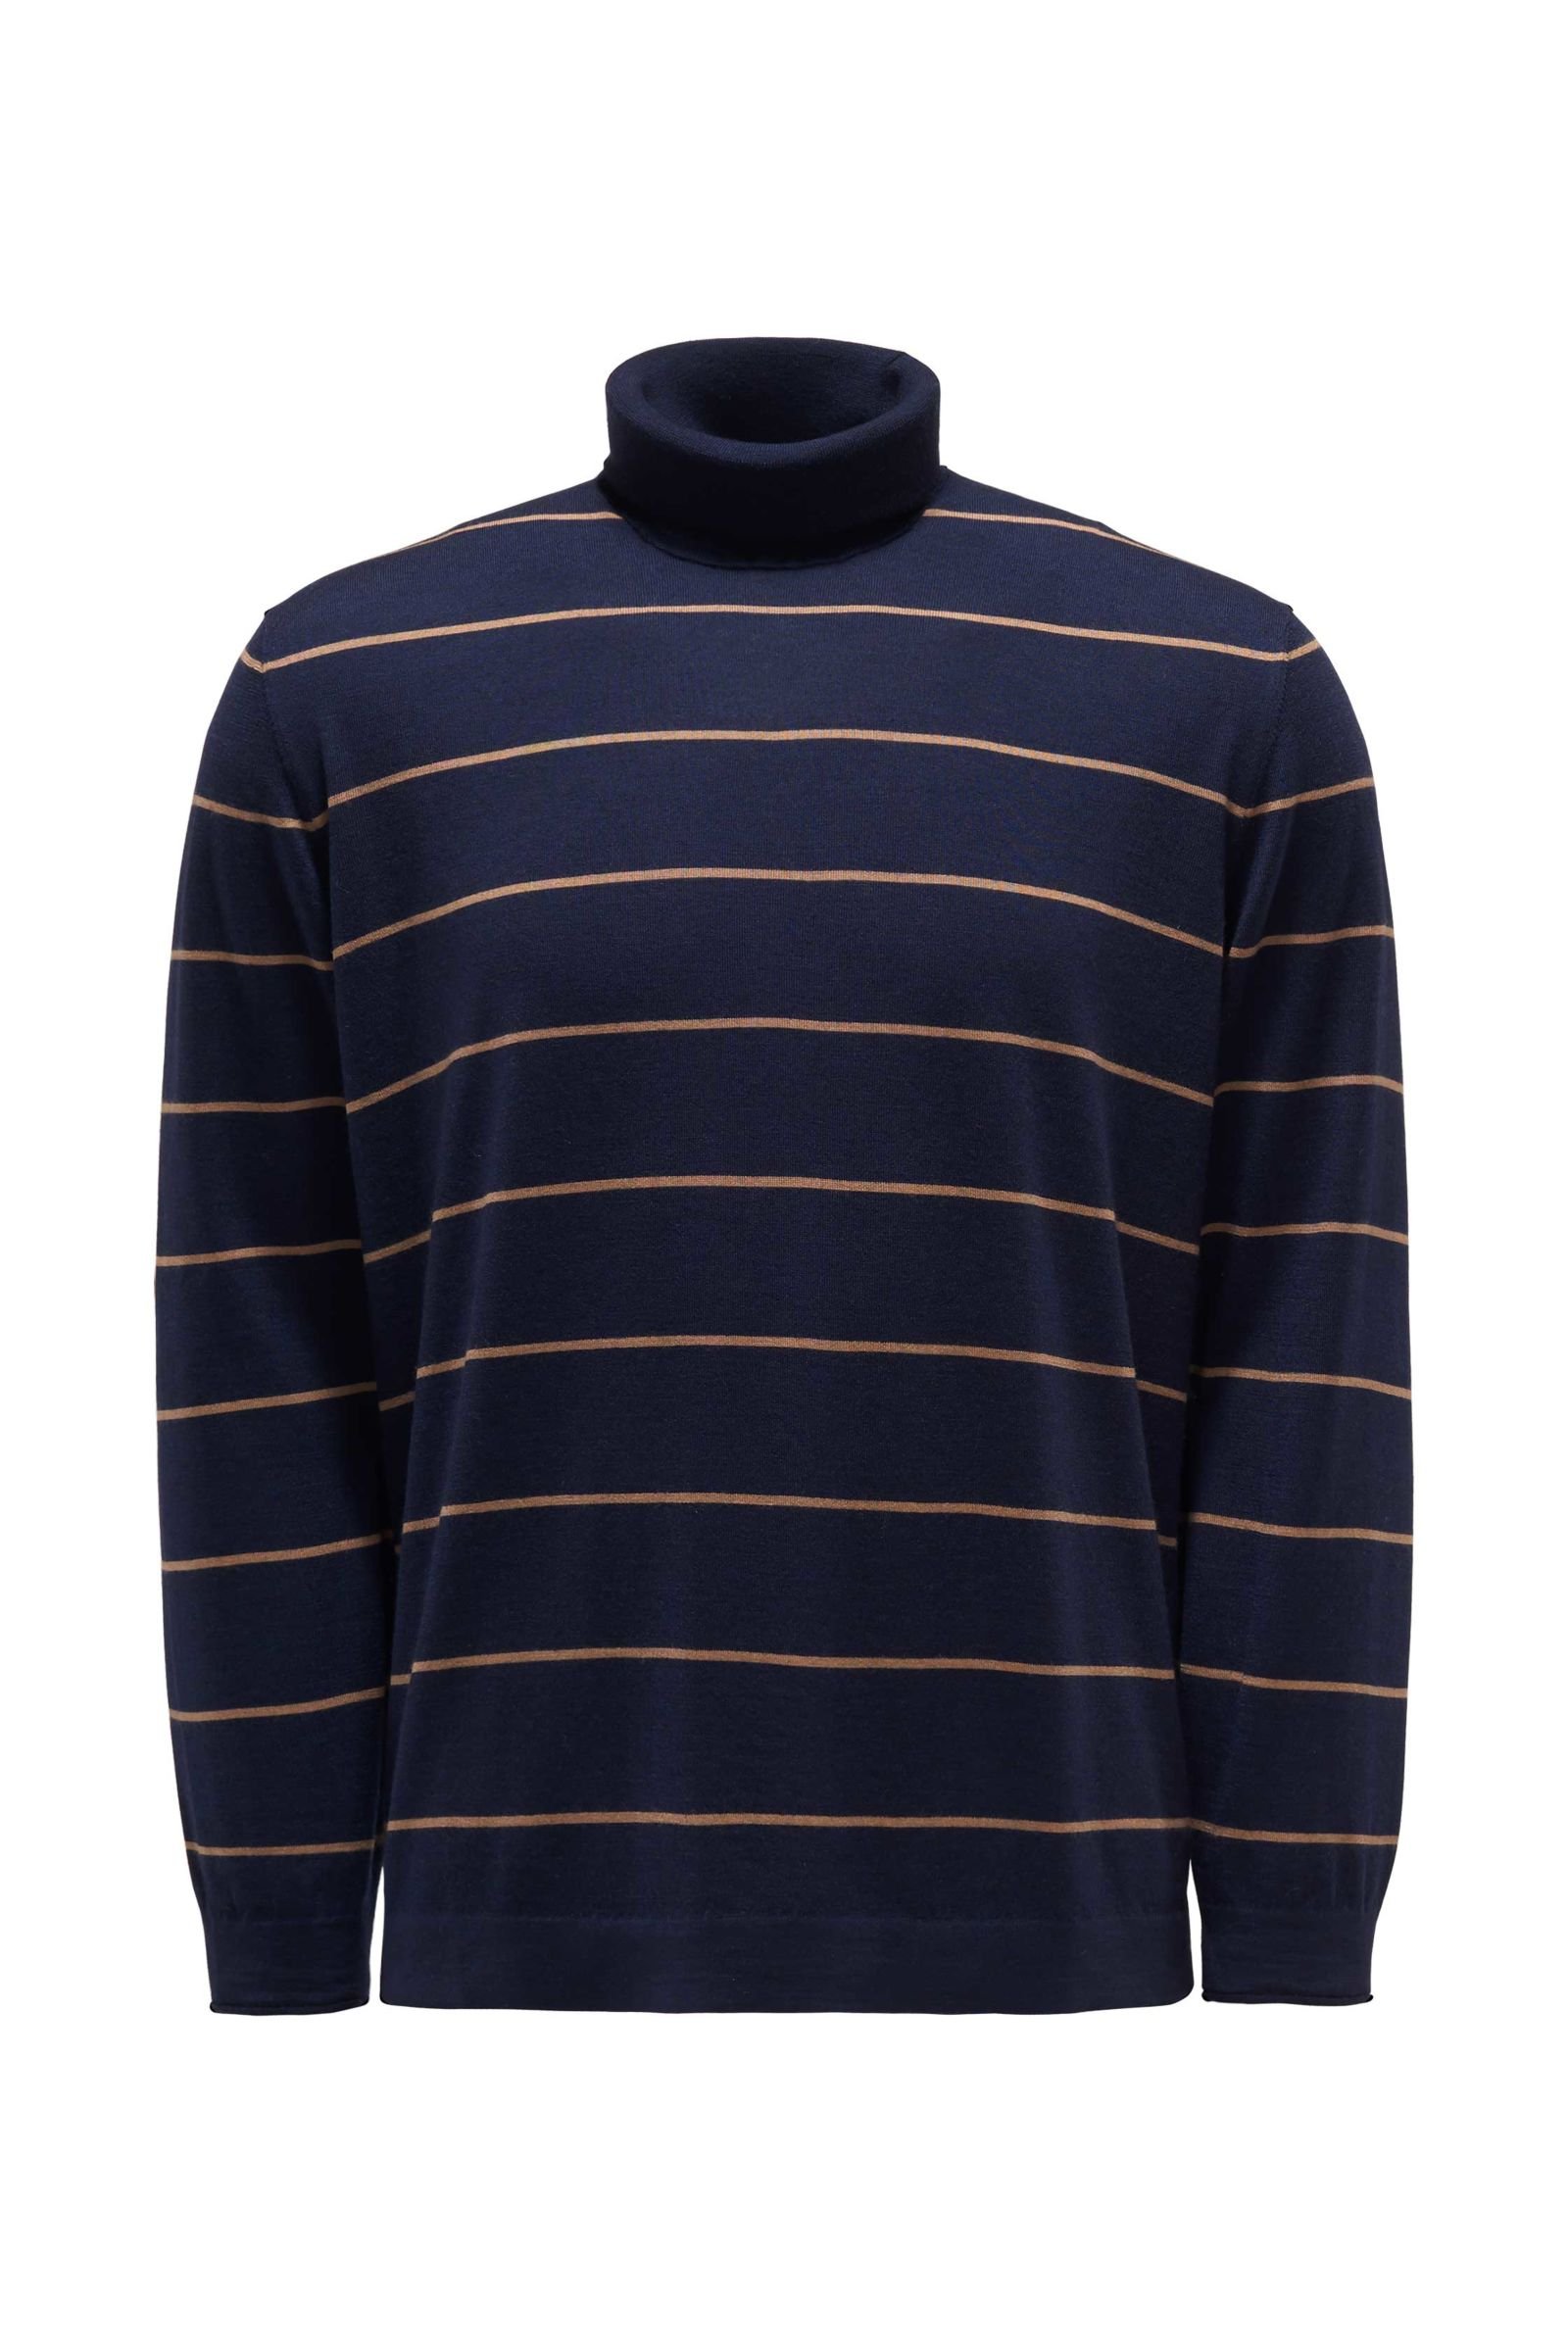 Fine knit turtleneck jumper navy/light brown striped